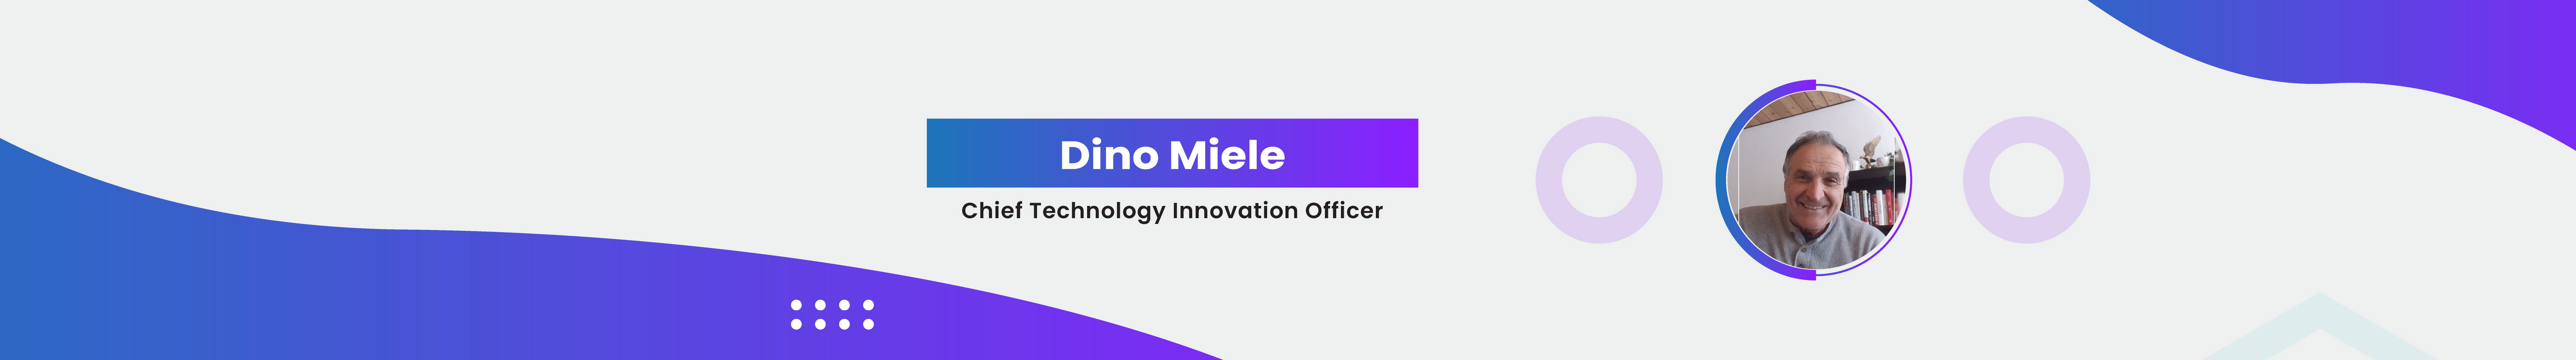 Profil-Banner von Dino Miele